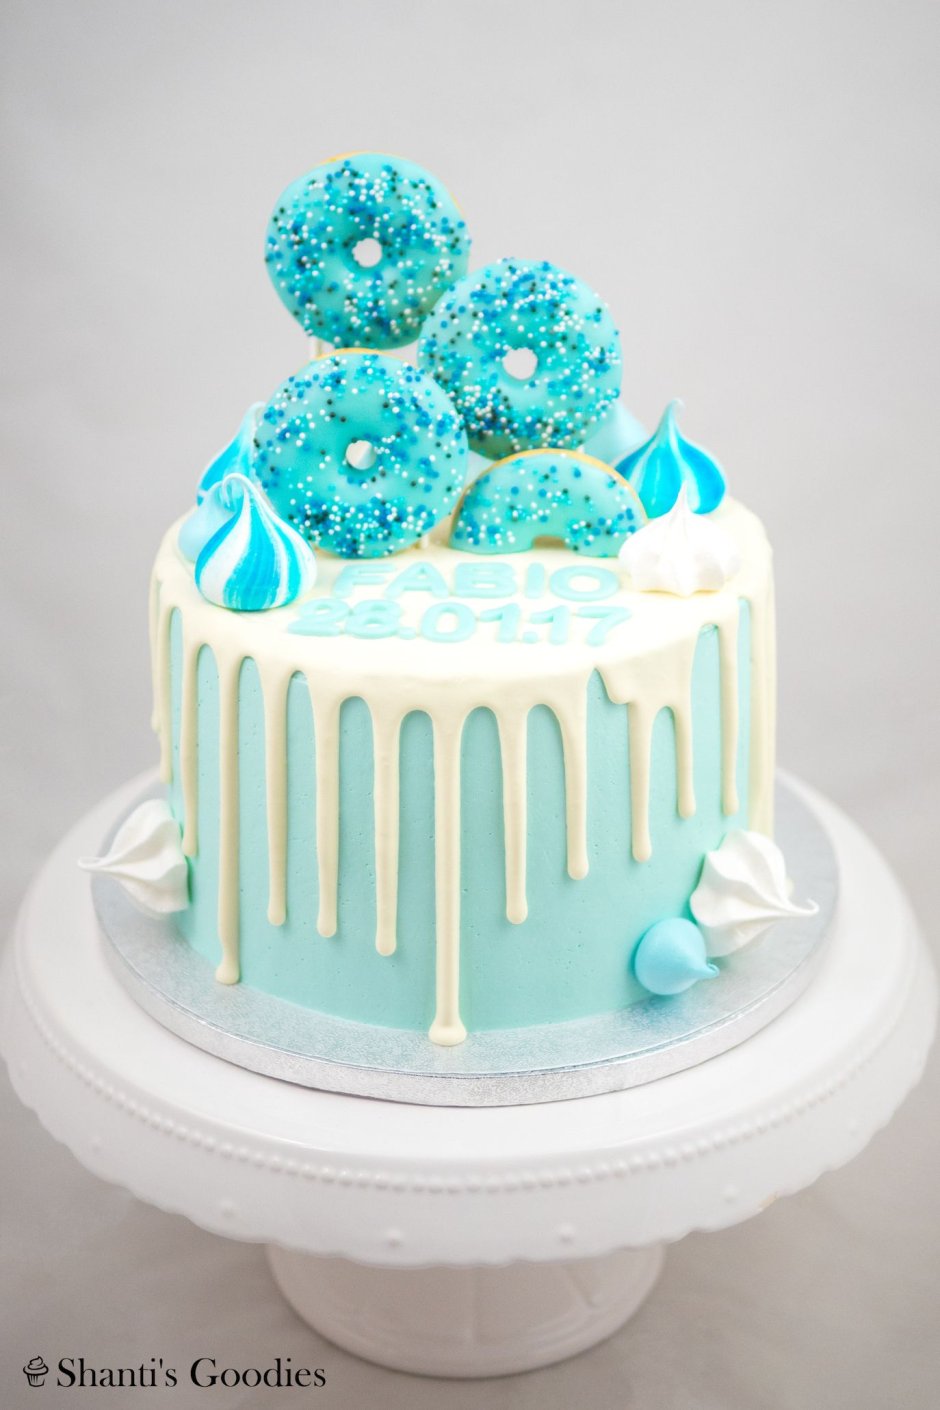 Торт для девочки в голубых тонах